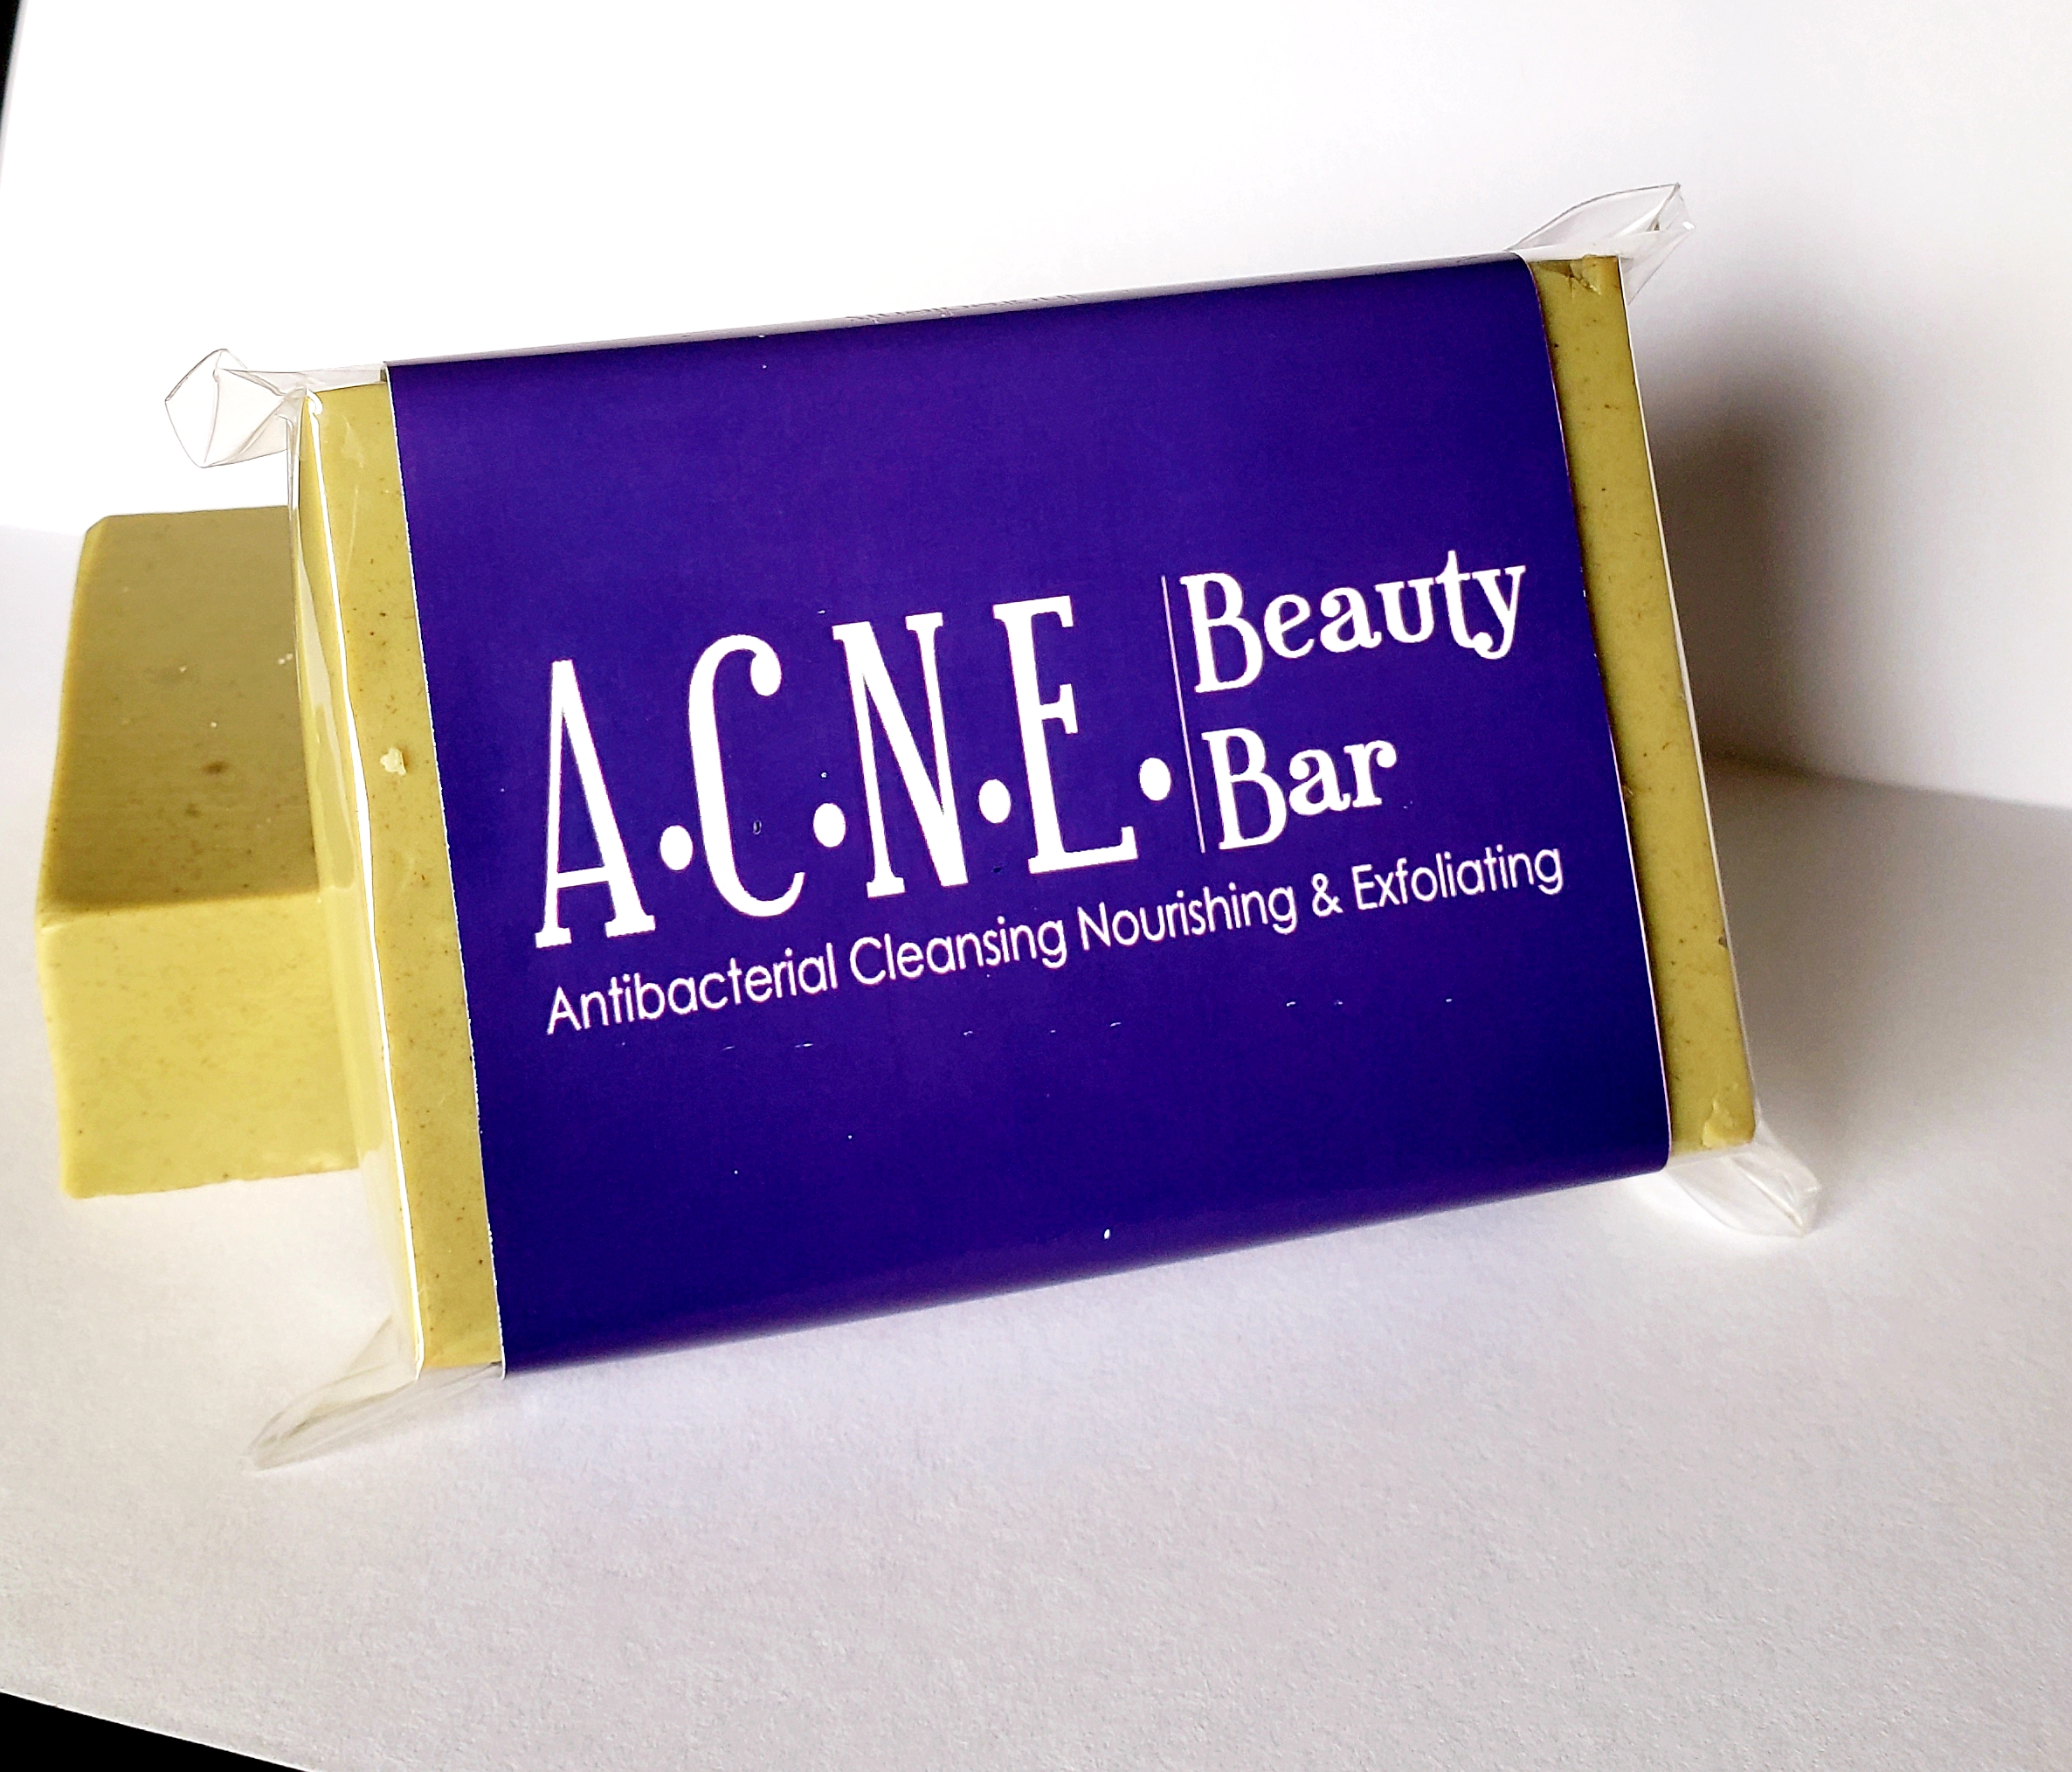 A.C.N.E. Beauty Bar